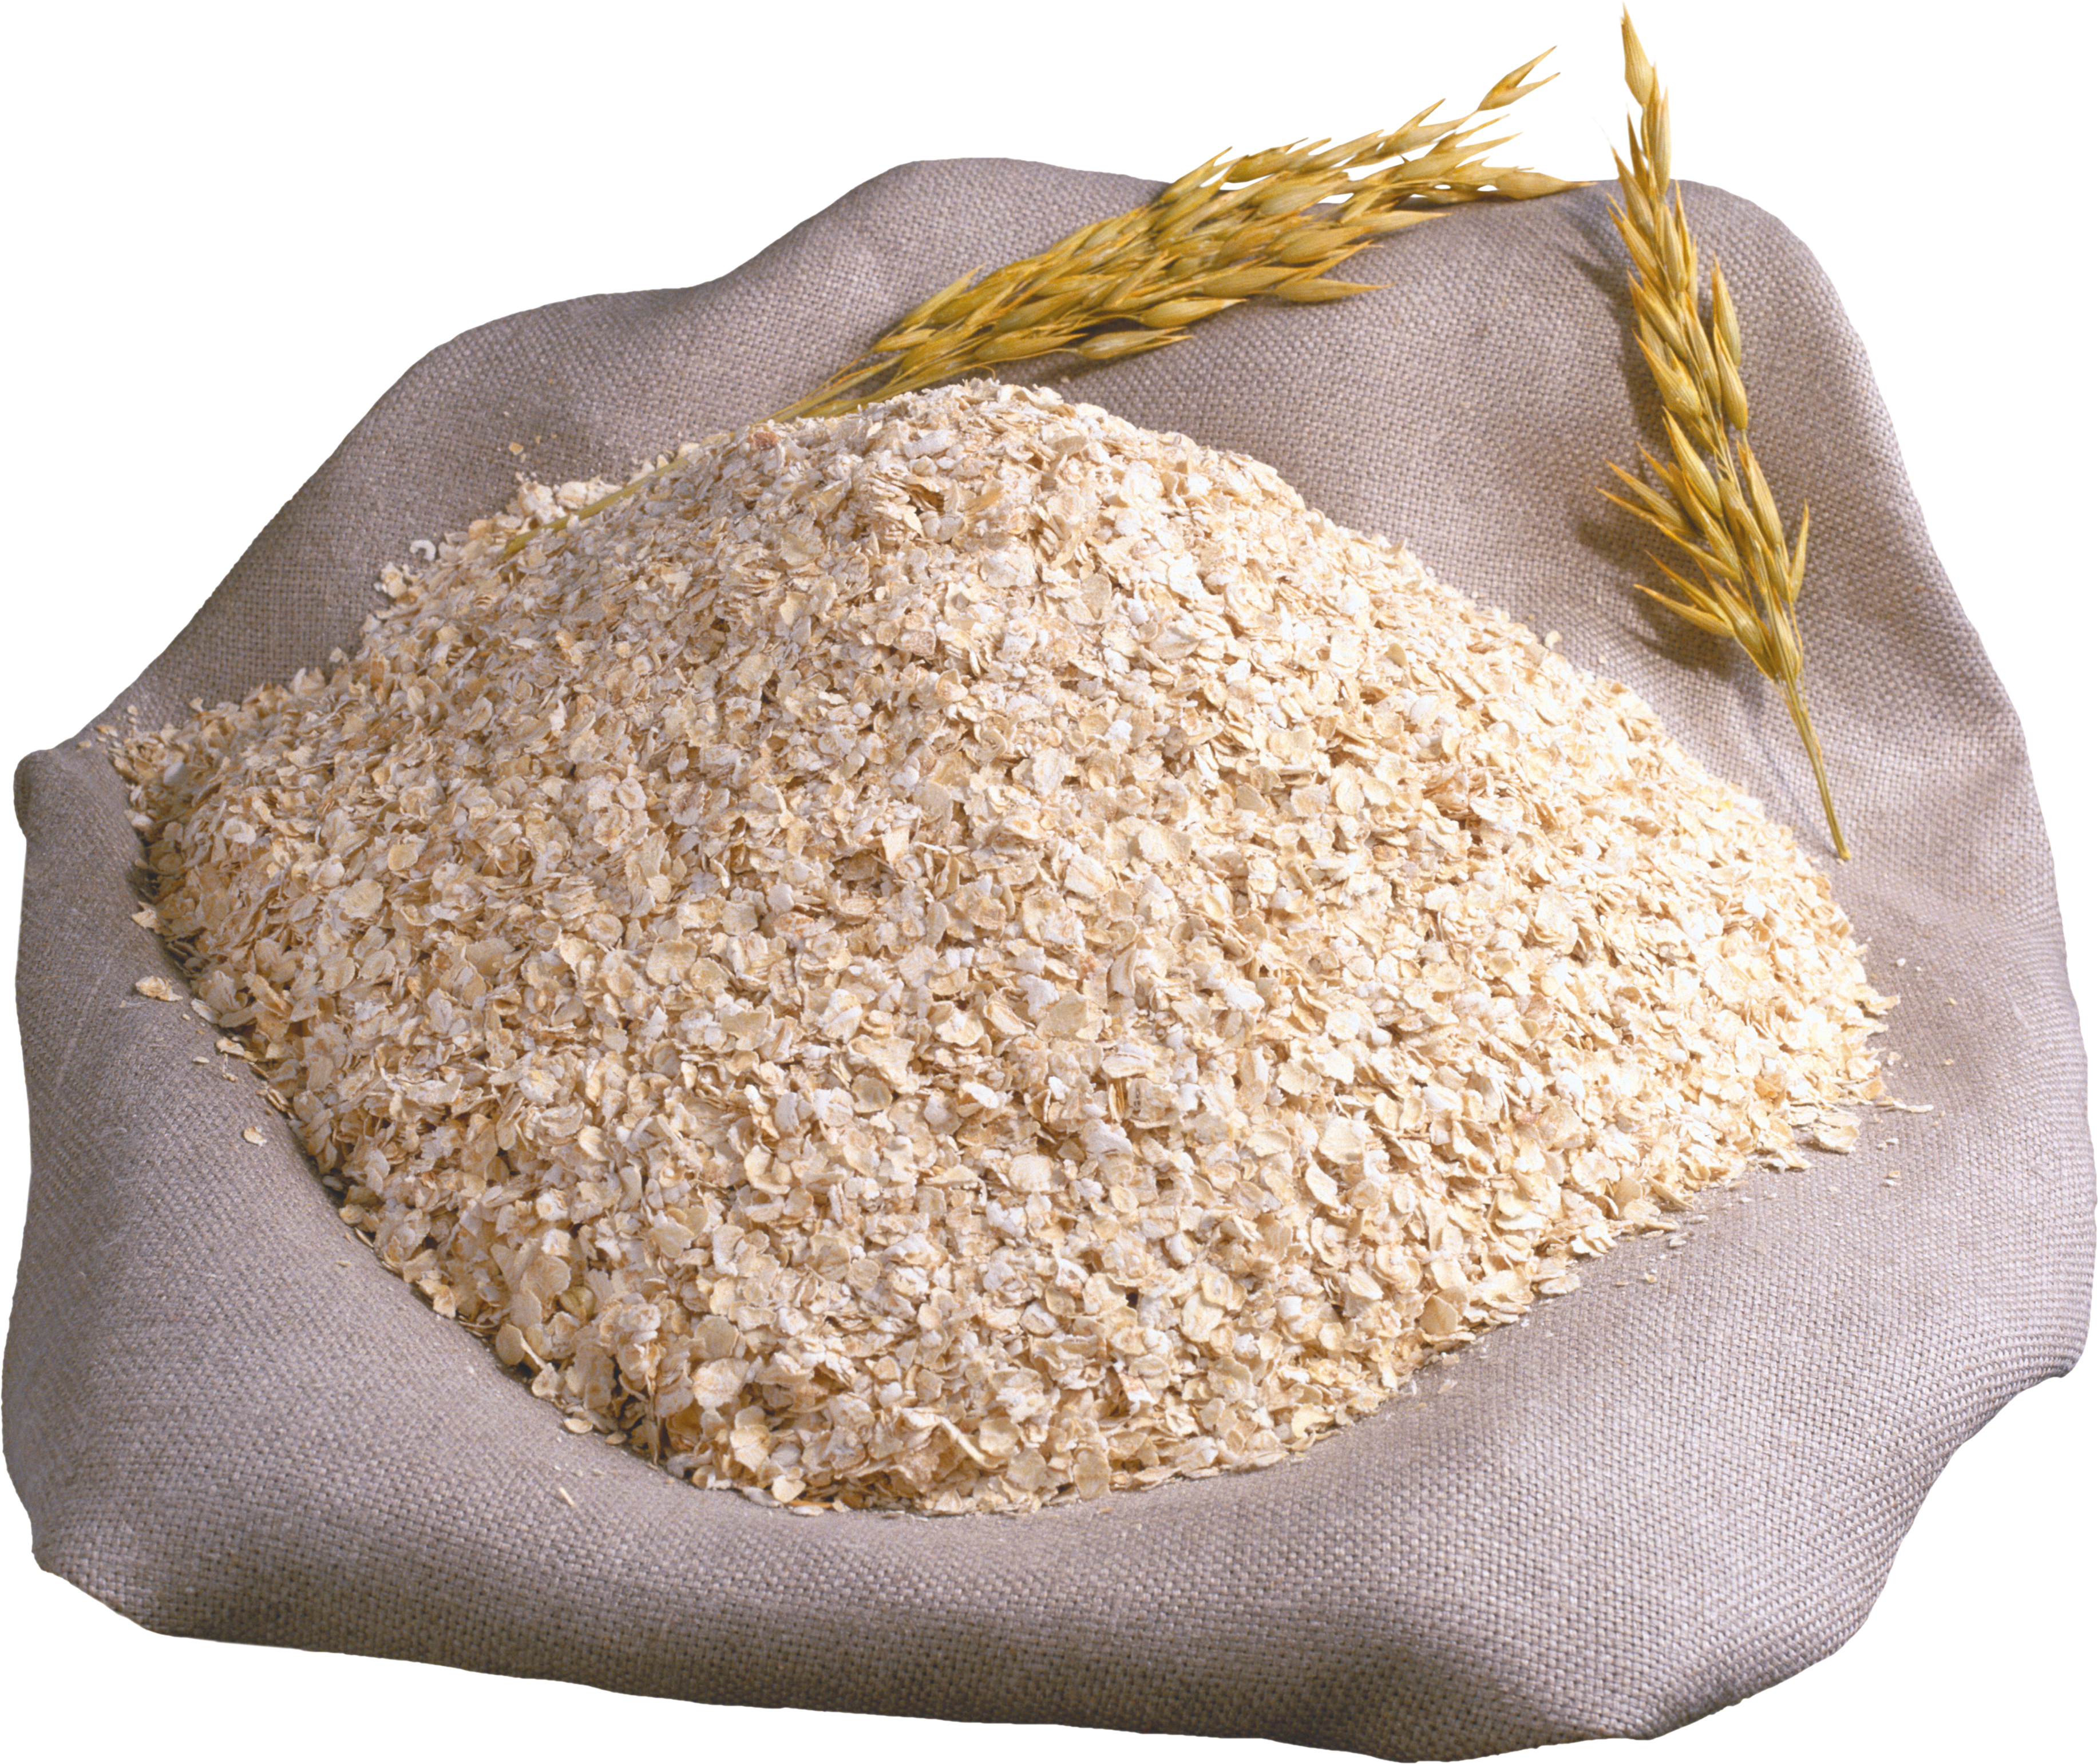 Е пшеничный. Отруби пшеничные, мешок (25 кг). Крупа пшеничная мешок 50кг АГРОСА. Отруби, крупа пшеничная. Мешки с крупой.